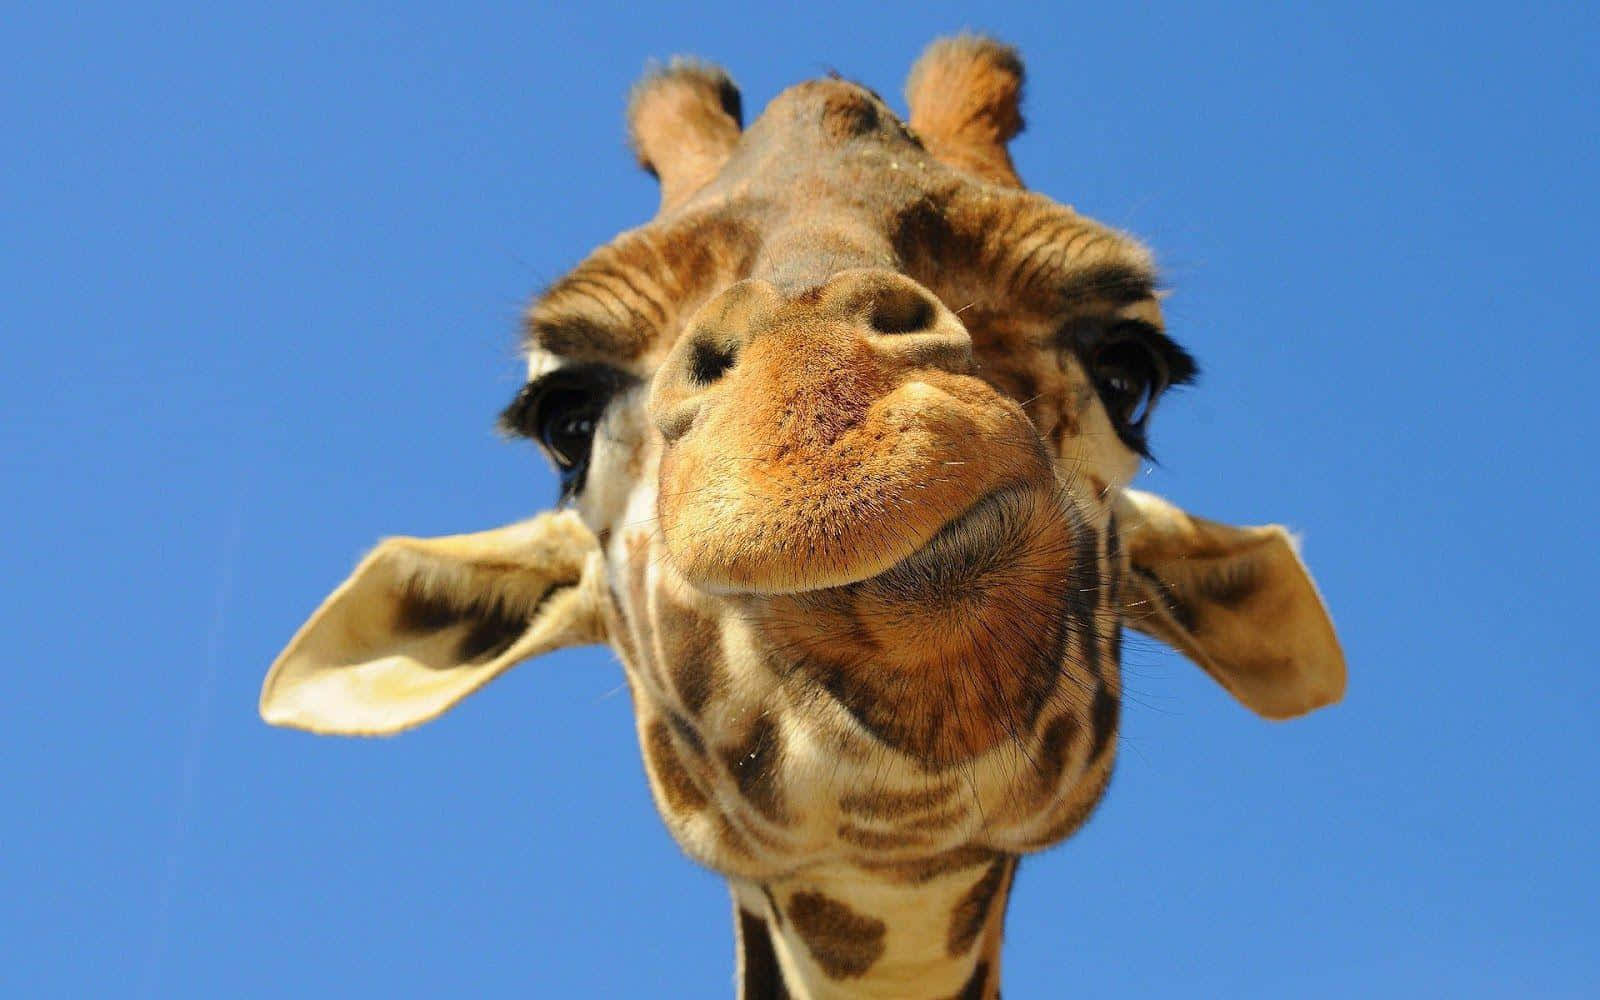 A majestic and beautiful giraffe standing tall